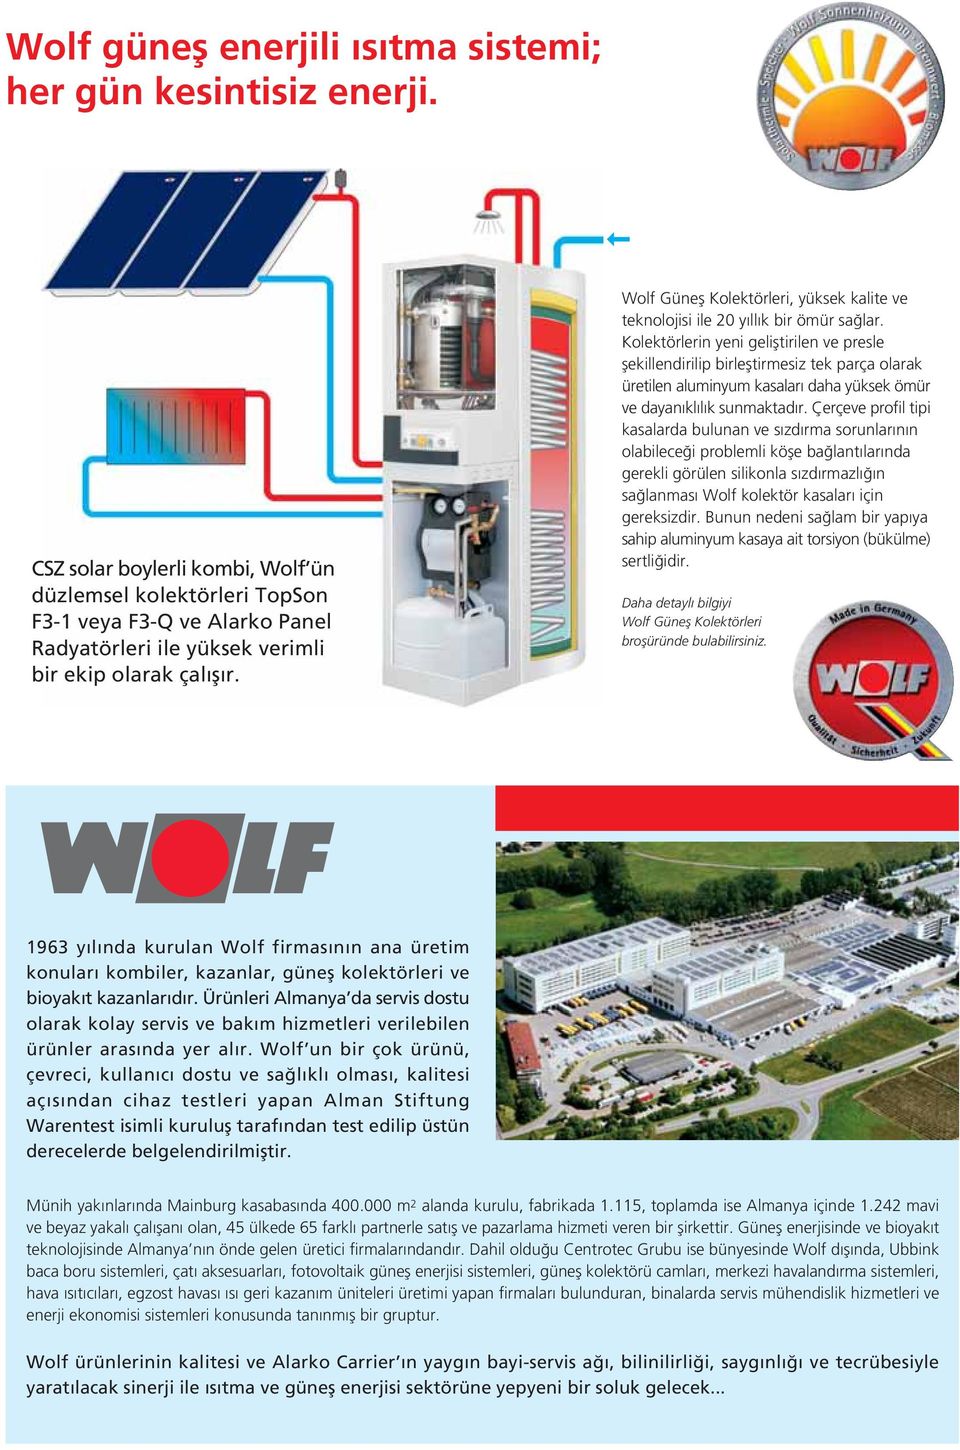 Wolf Günefl Kolektörleri, yüksek kalite ve teknolojisi ile 20 y ll k bir ömür sa lar.